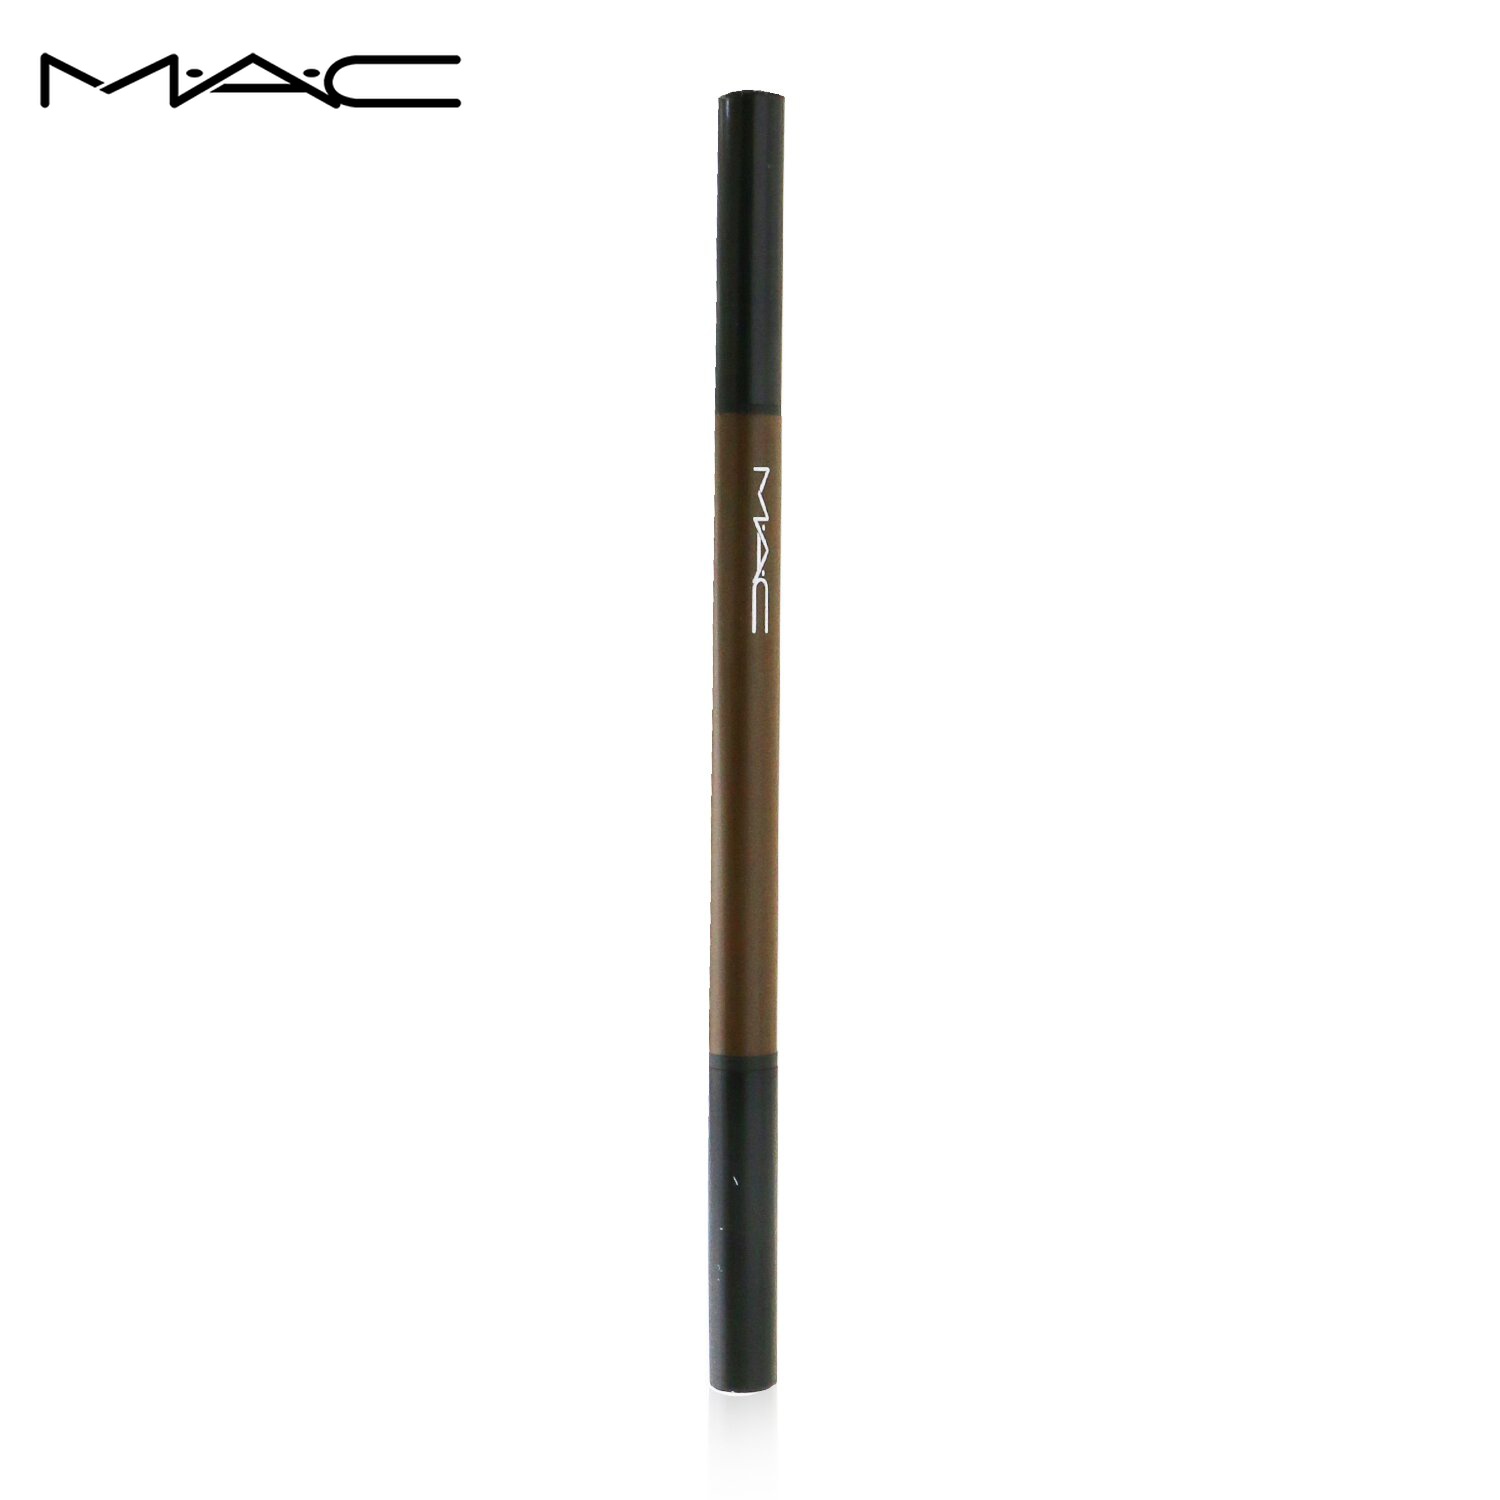 【おすすめ】 購入 MAC アイブロウ マック Eye Brows Styler - # Brunette Medium Brown 0.09g メイクアップ アイ 誕生日プレゼント ギフト 人気 ブランド コスメ giuseppedelduca.it giuseppedelduca.it